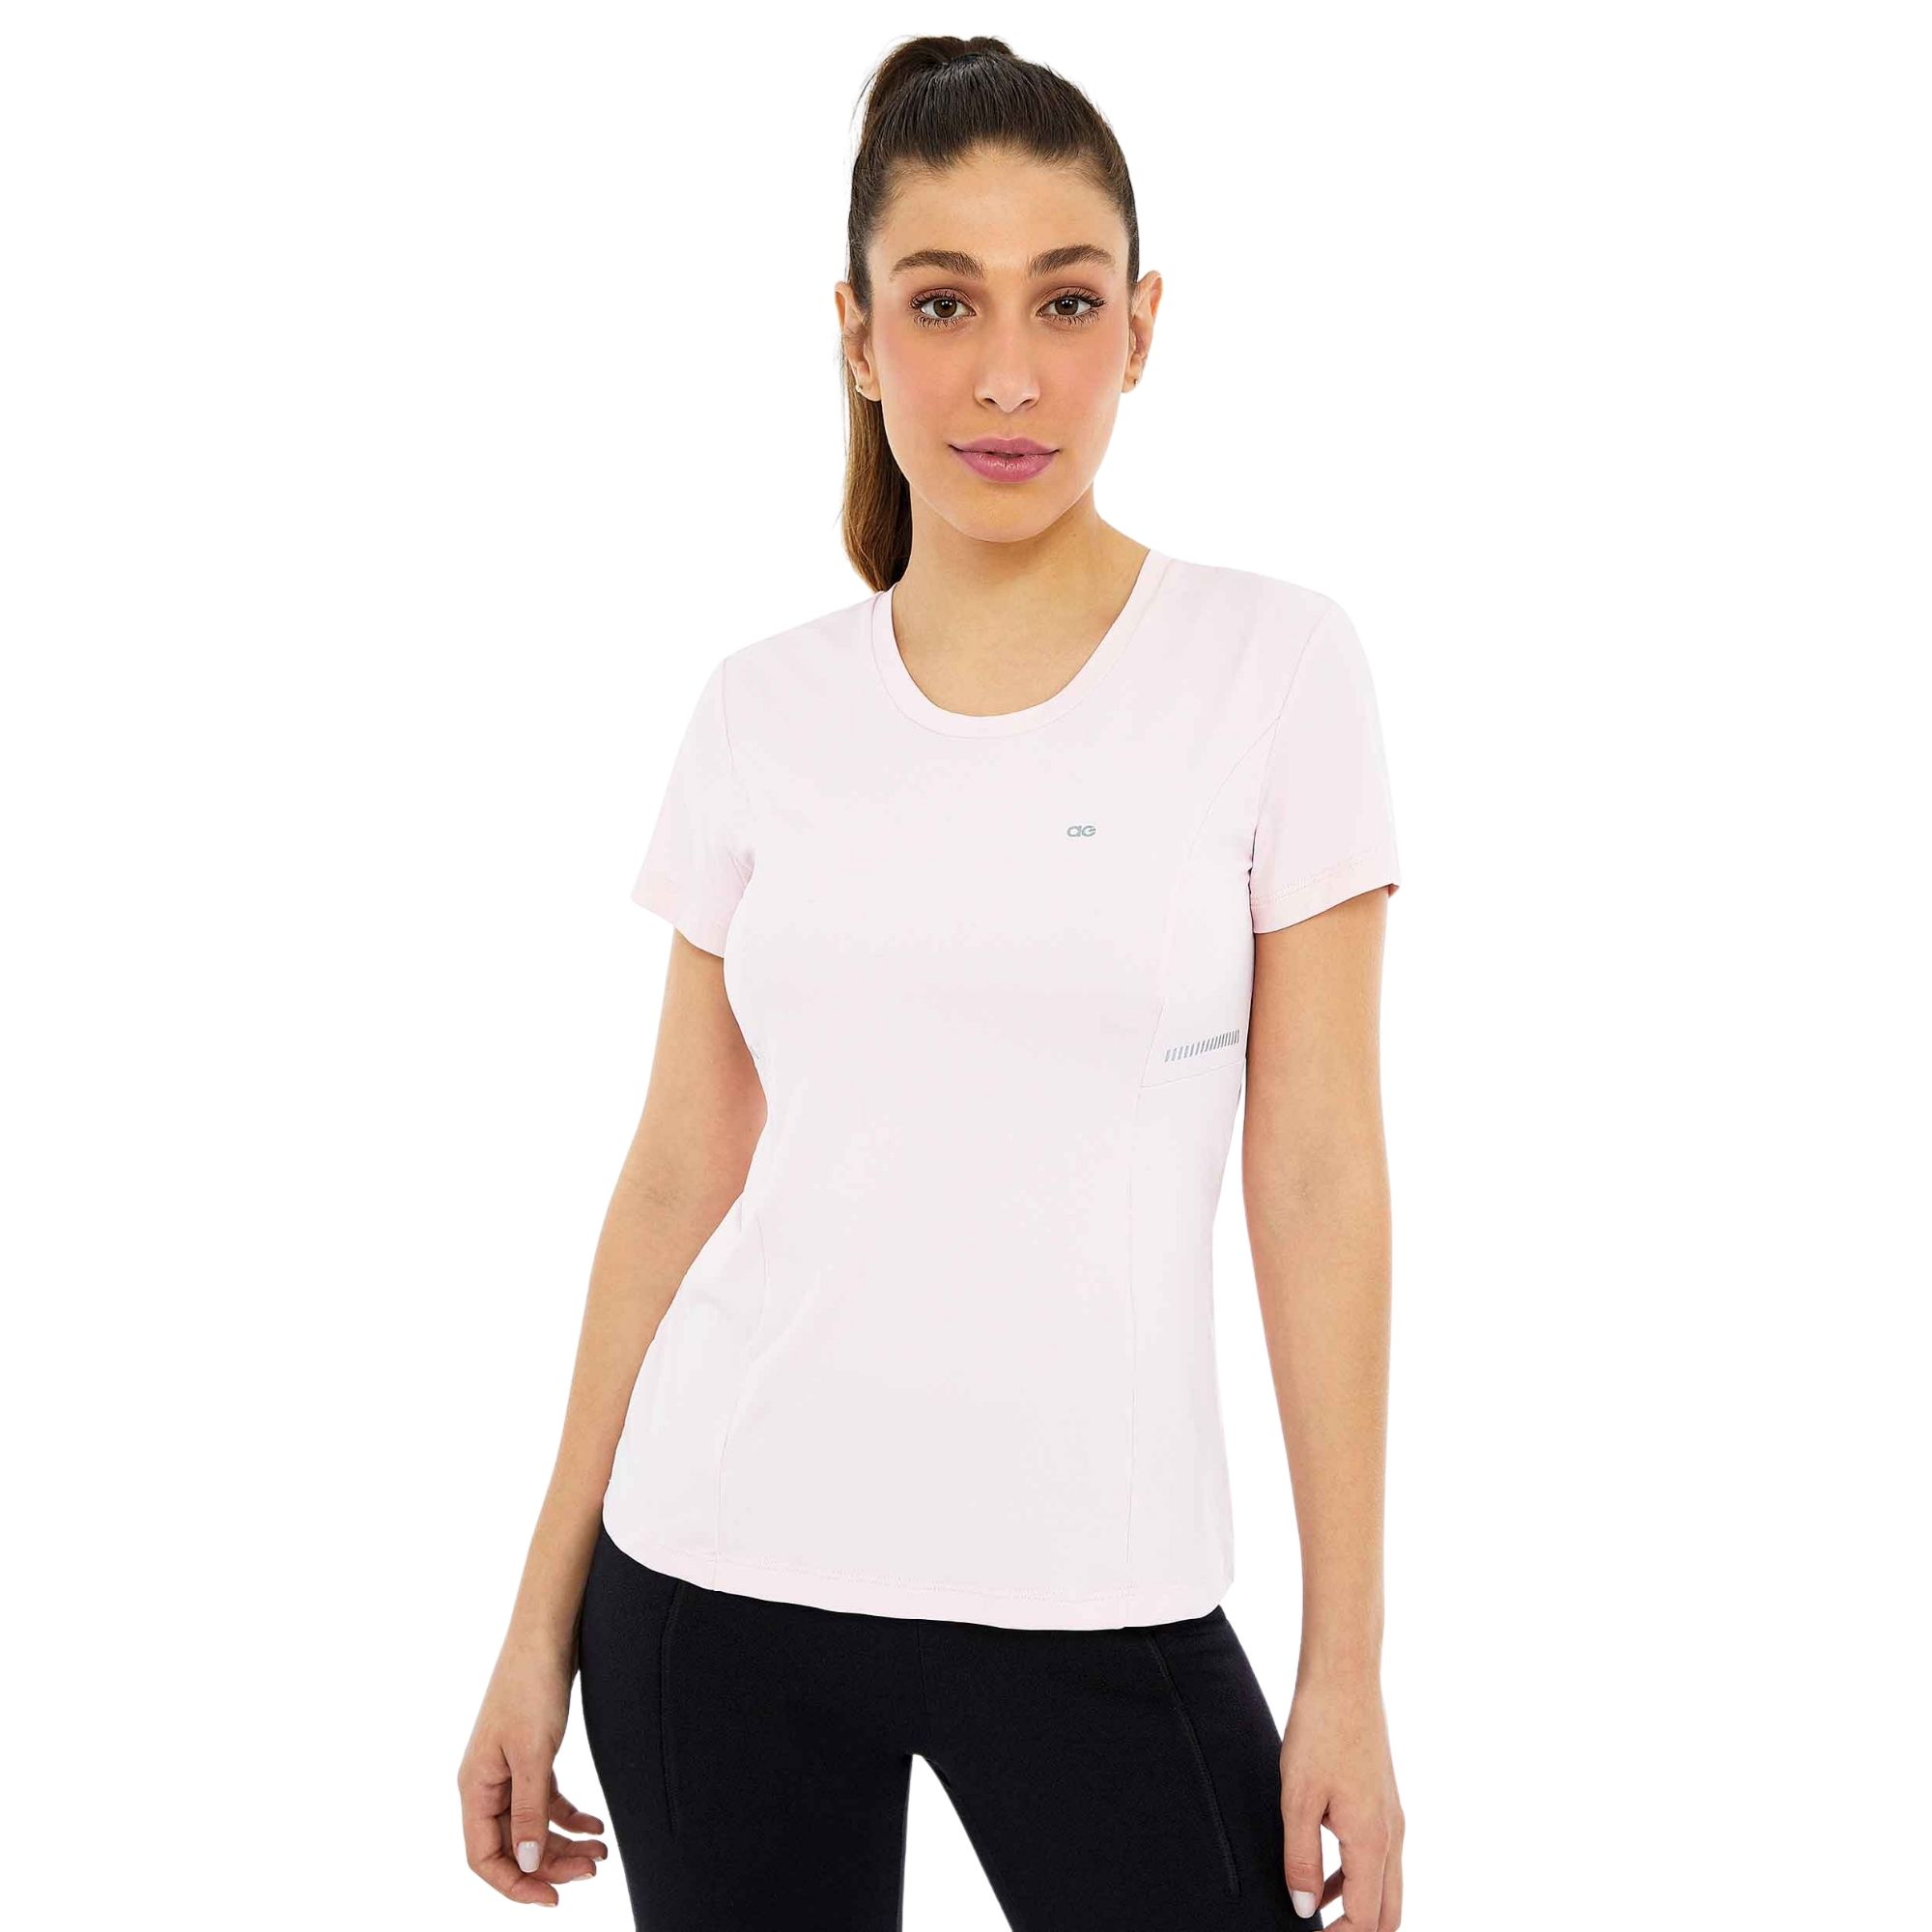 T-Shirt Skin Fit Recortes Com Refletivos Alto Giro